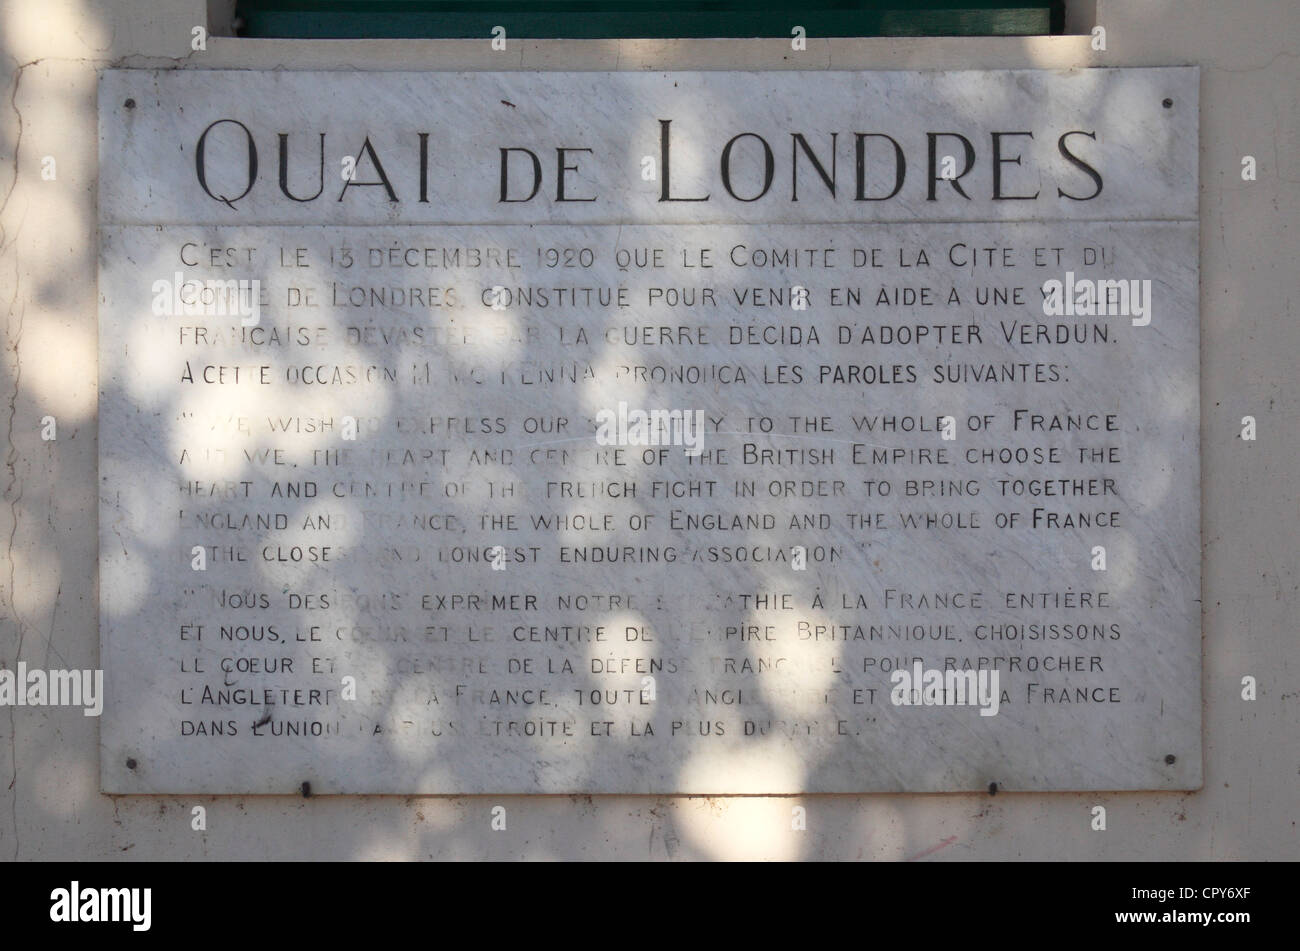 Die "Quai de Londres" (City of London) Plakette auf dem wichtigsten Kai der Fluss Maas in Verdun, Maas, Lothringen, Frankreich. Stockfoto